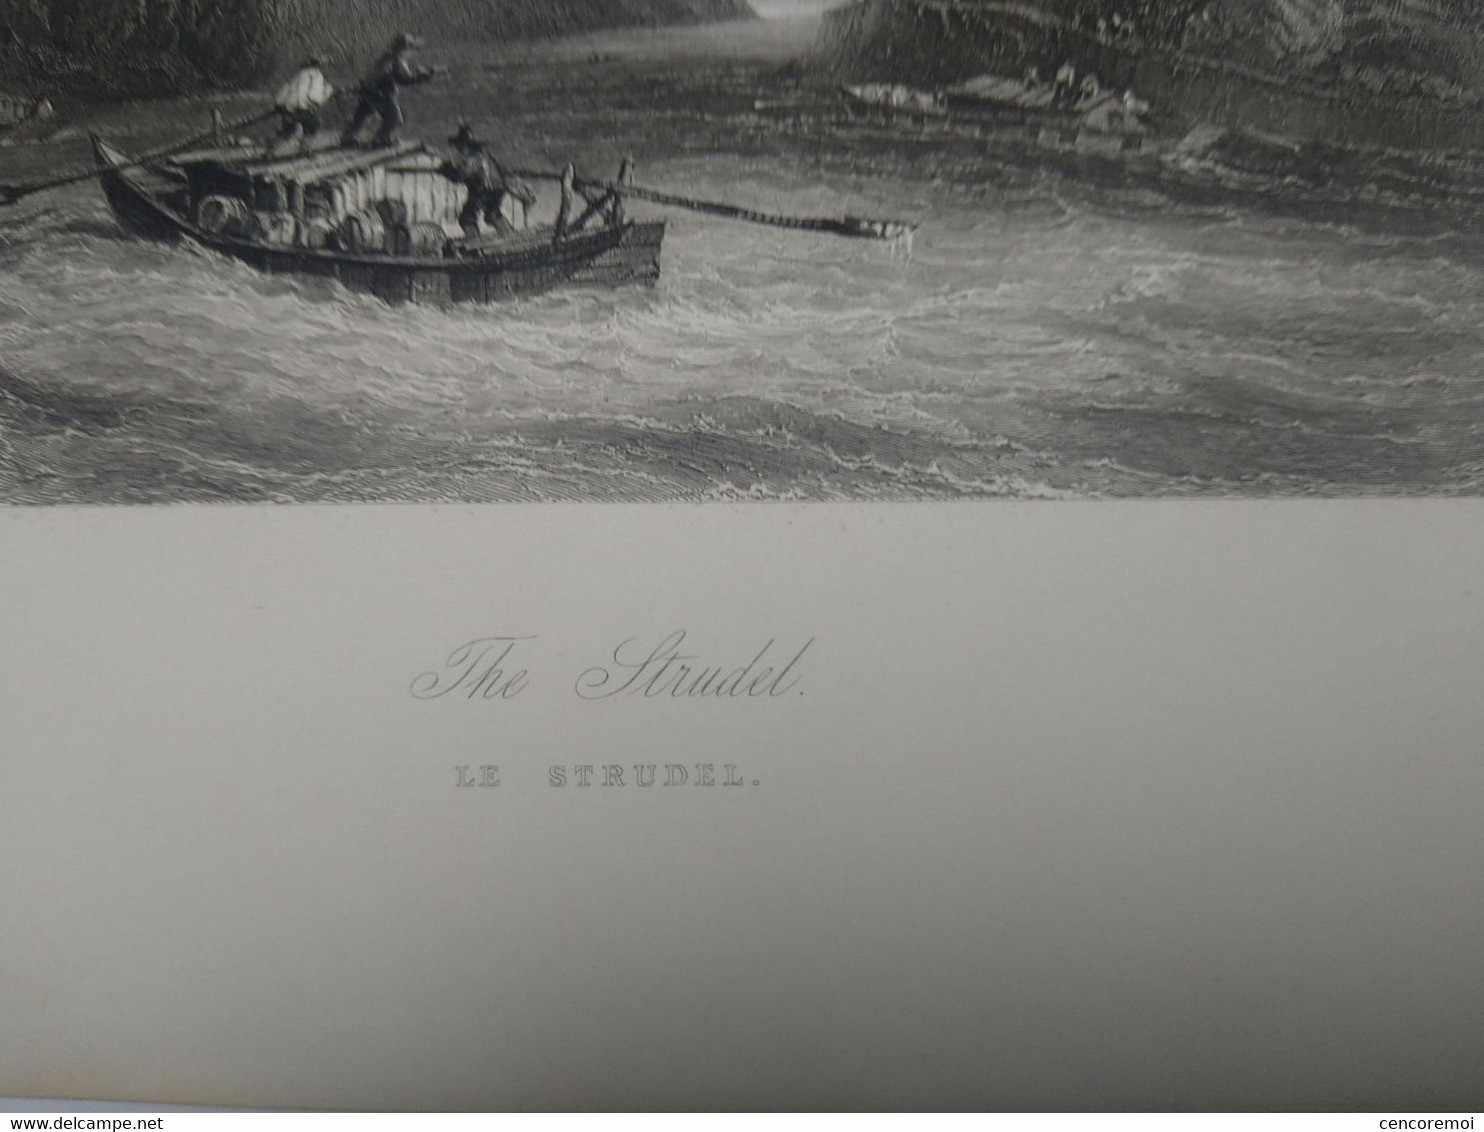 Gravure Ancienne, The Strudel, Hommes En Barque En Autriche - Autres Plans